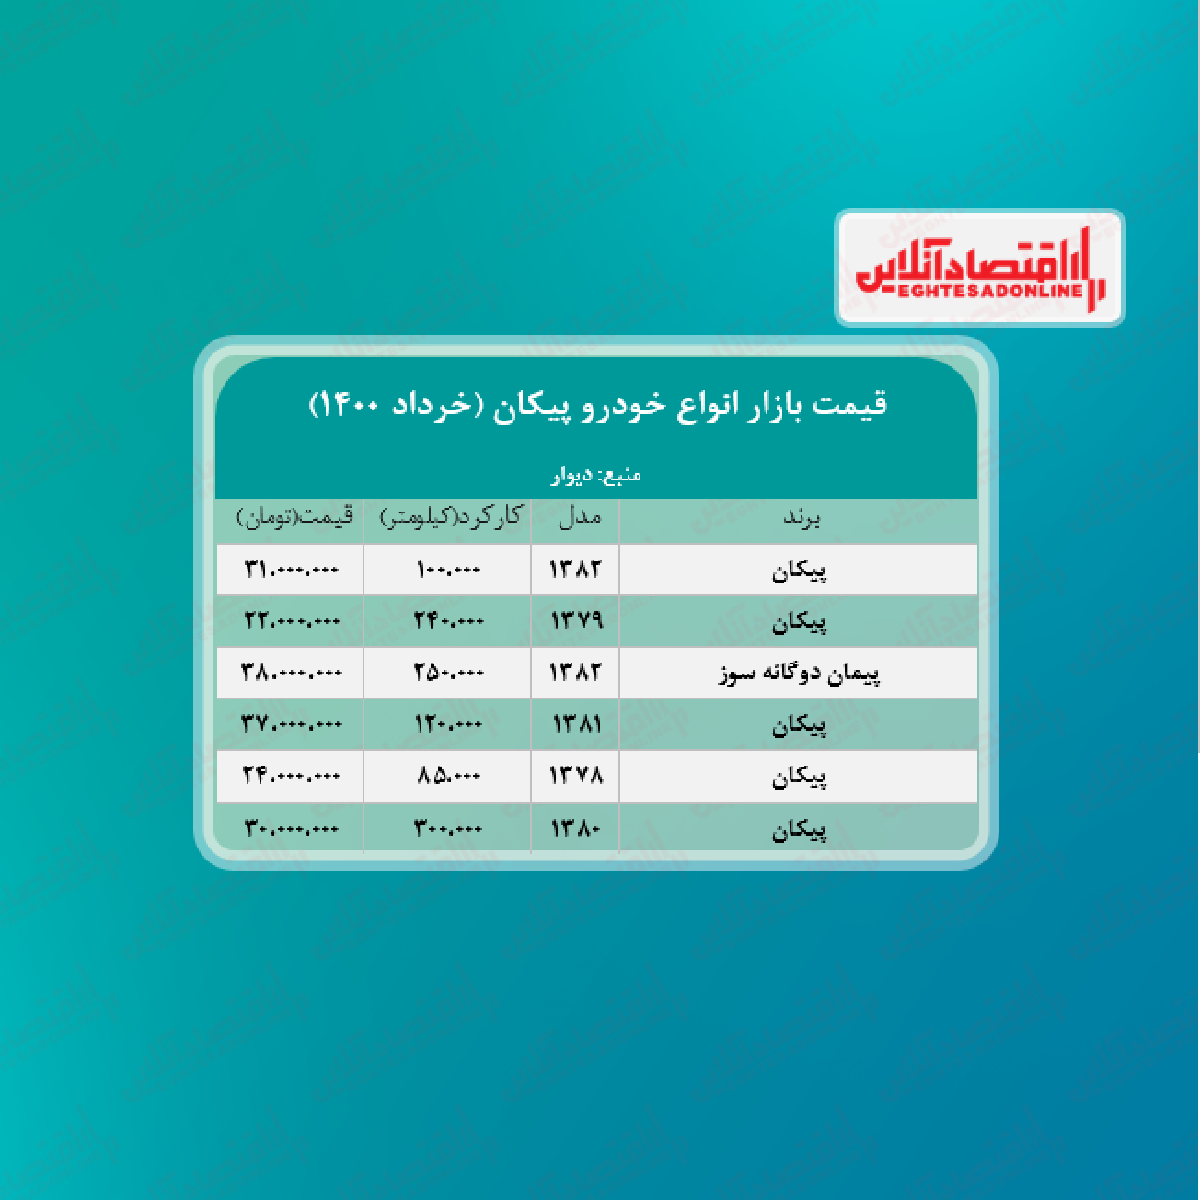 جدیدترین قیمت پیکان در تهران + جدول